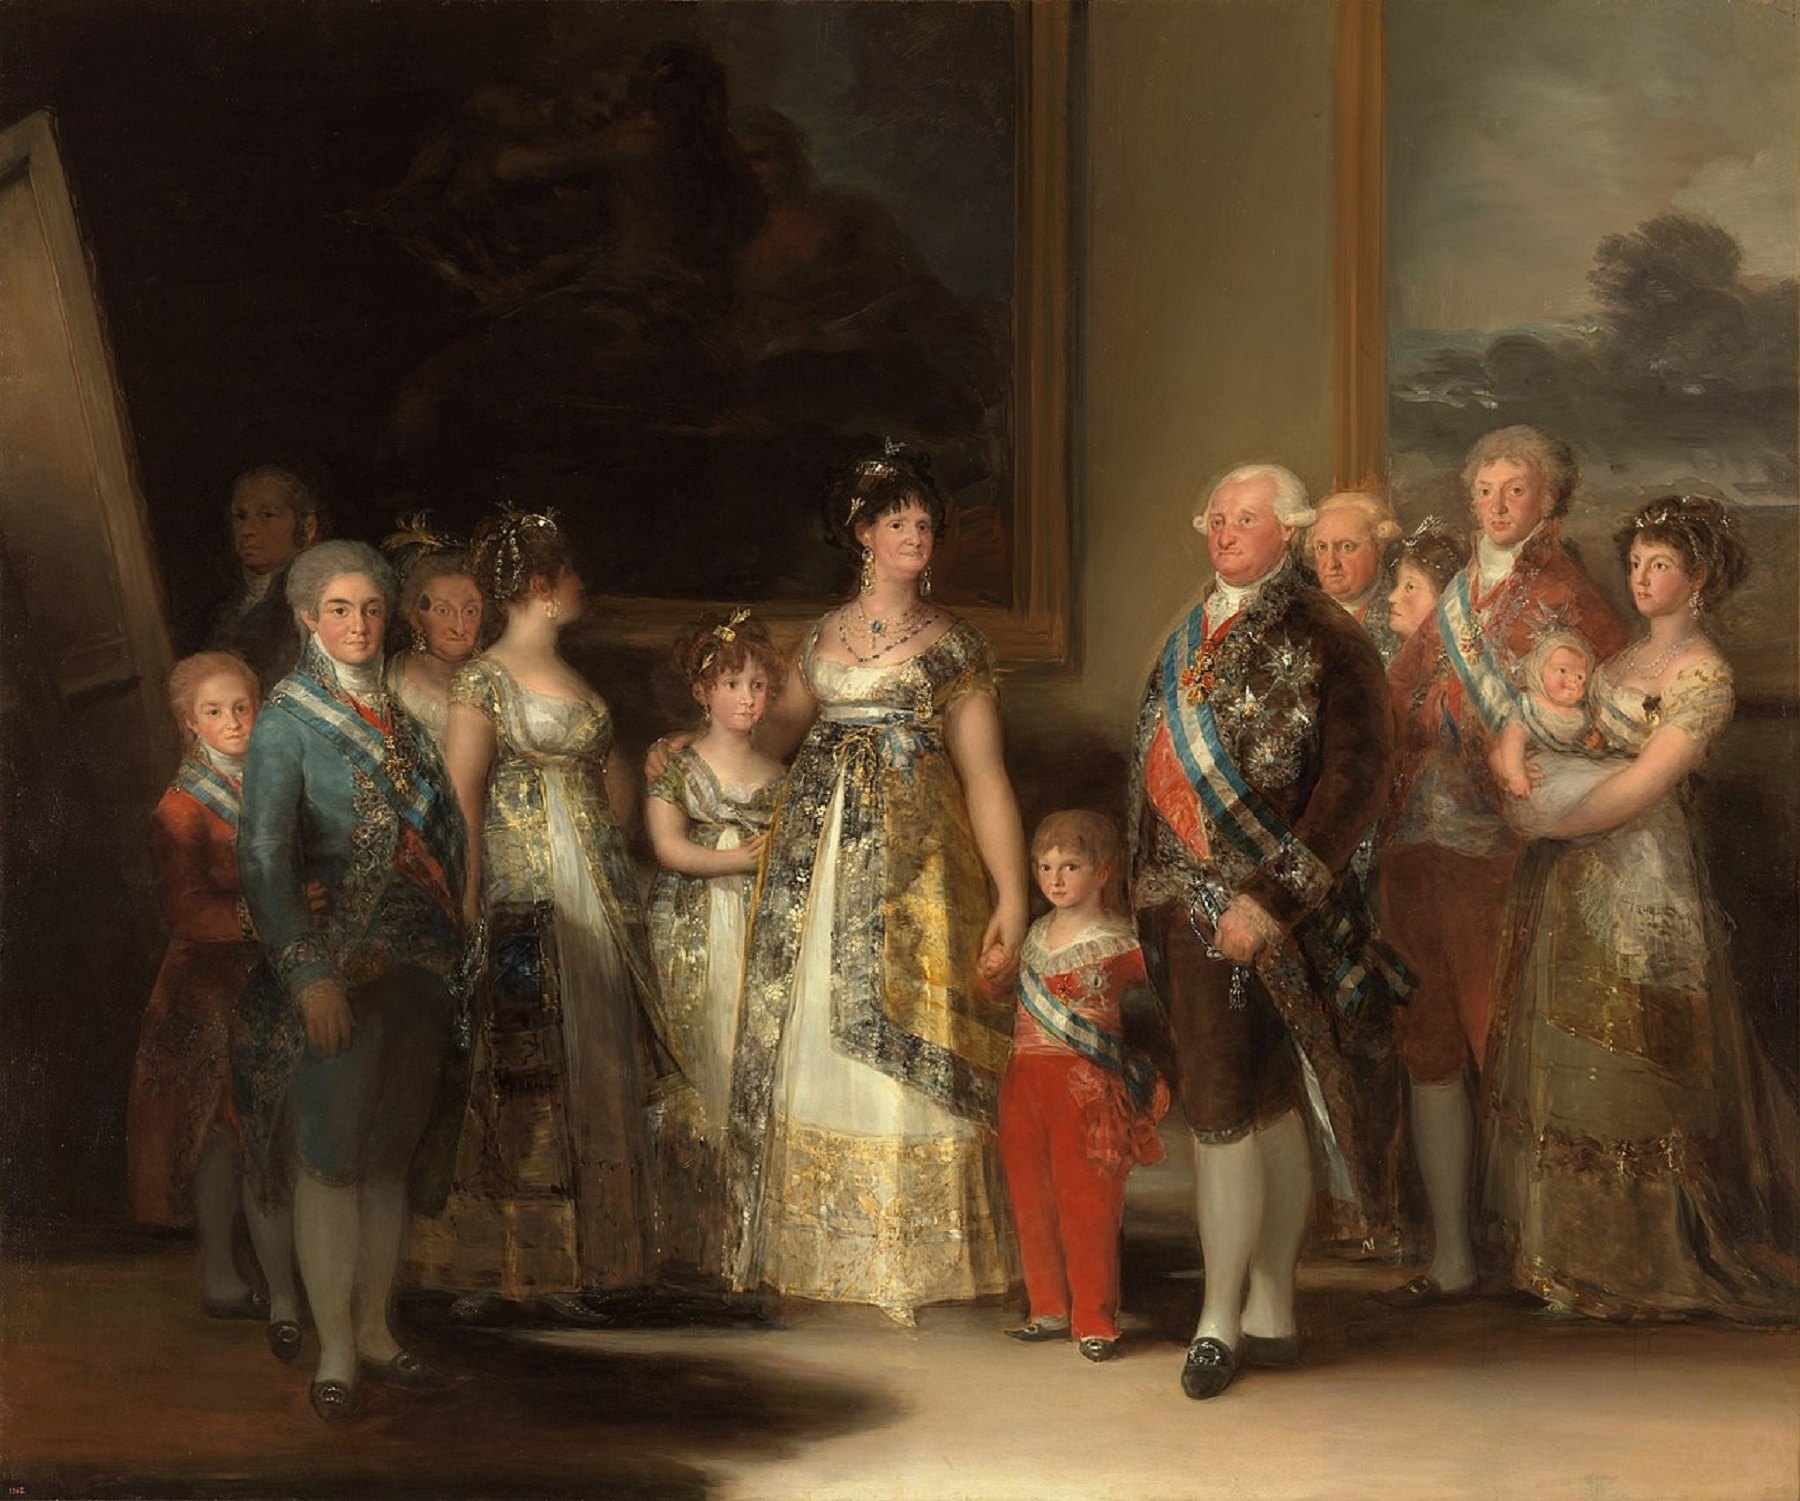 La reina Maria Lluïsa, el ministre Godoy i les reials banyes de Carles IV